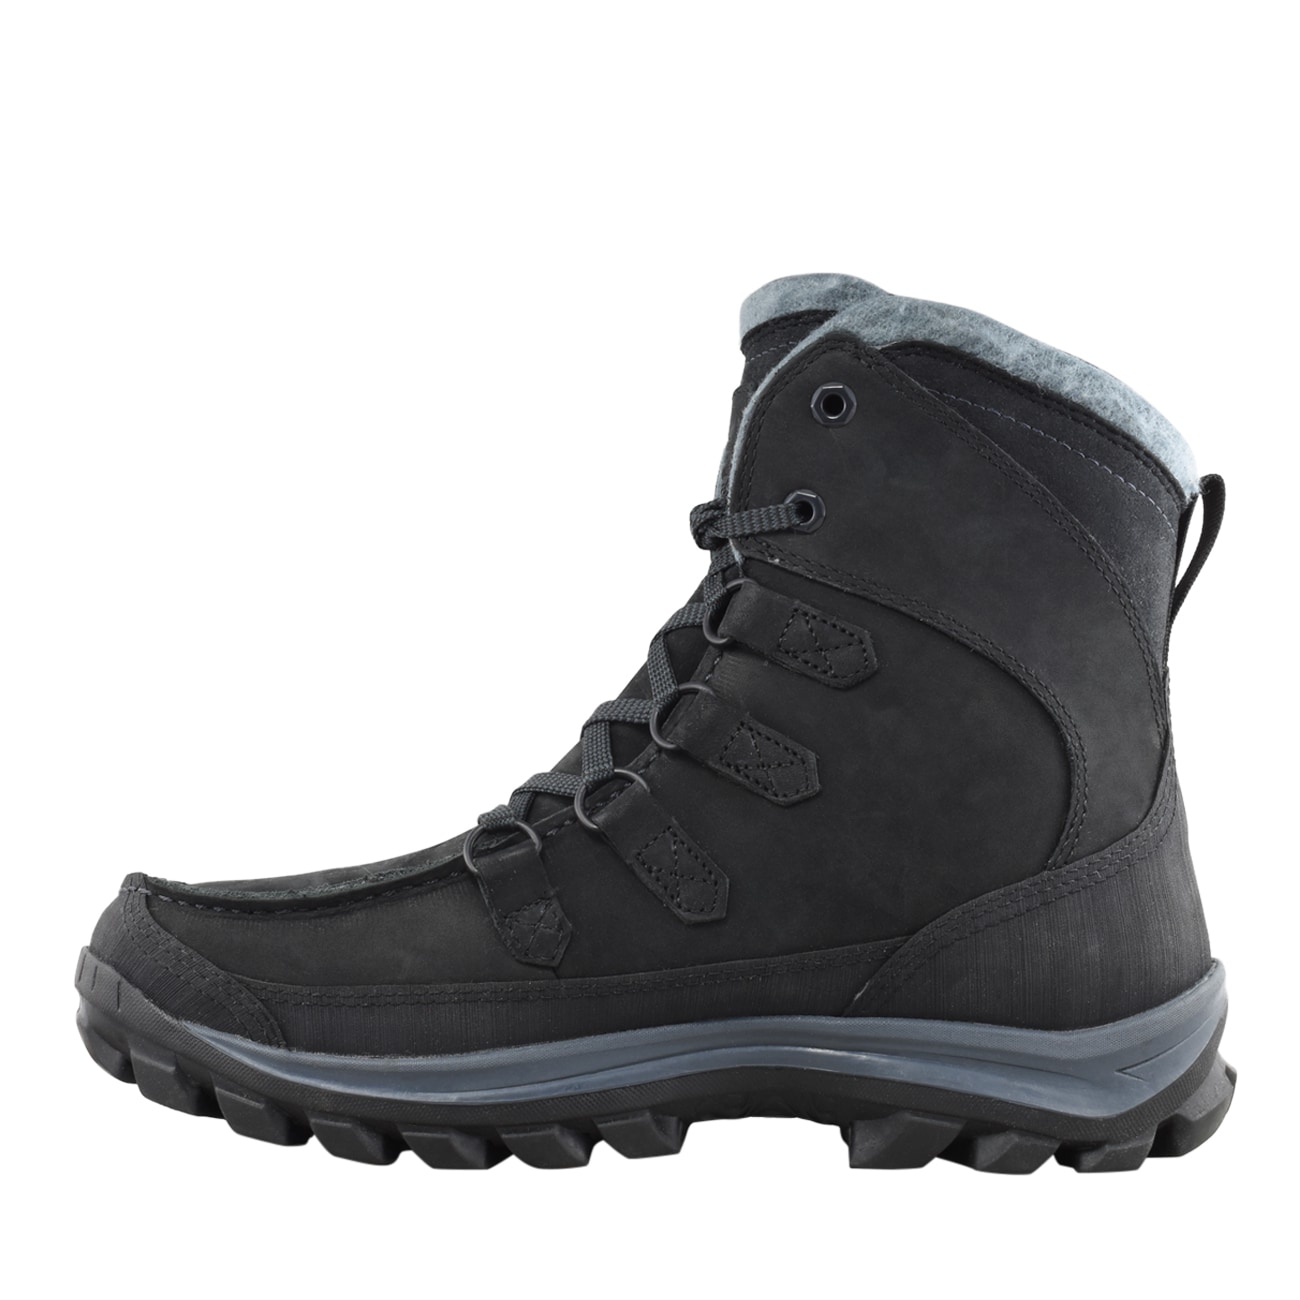 timberland chillberg premium waterproof boots